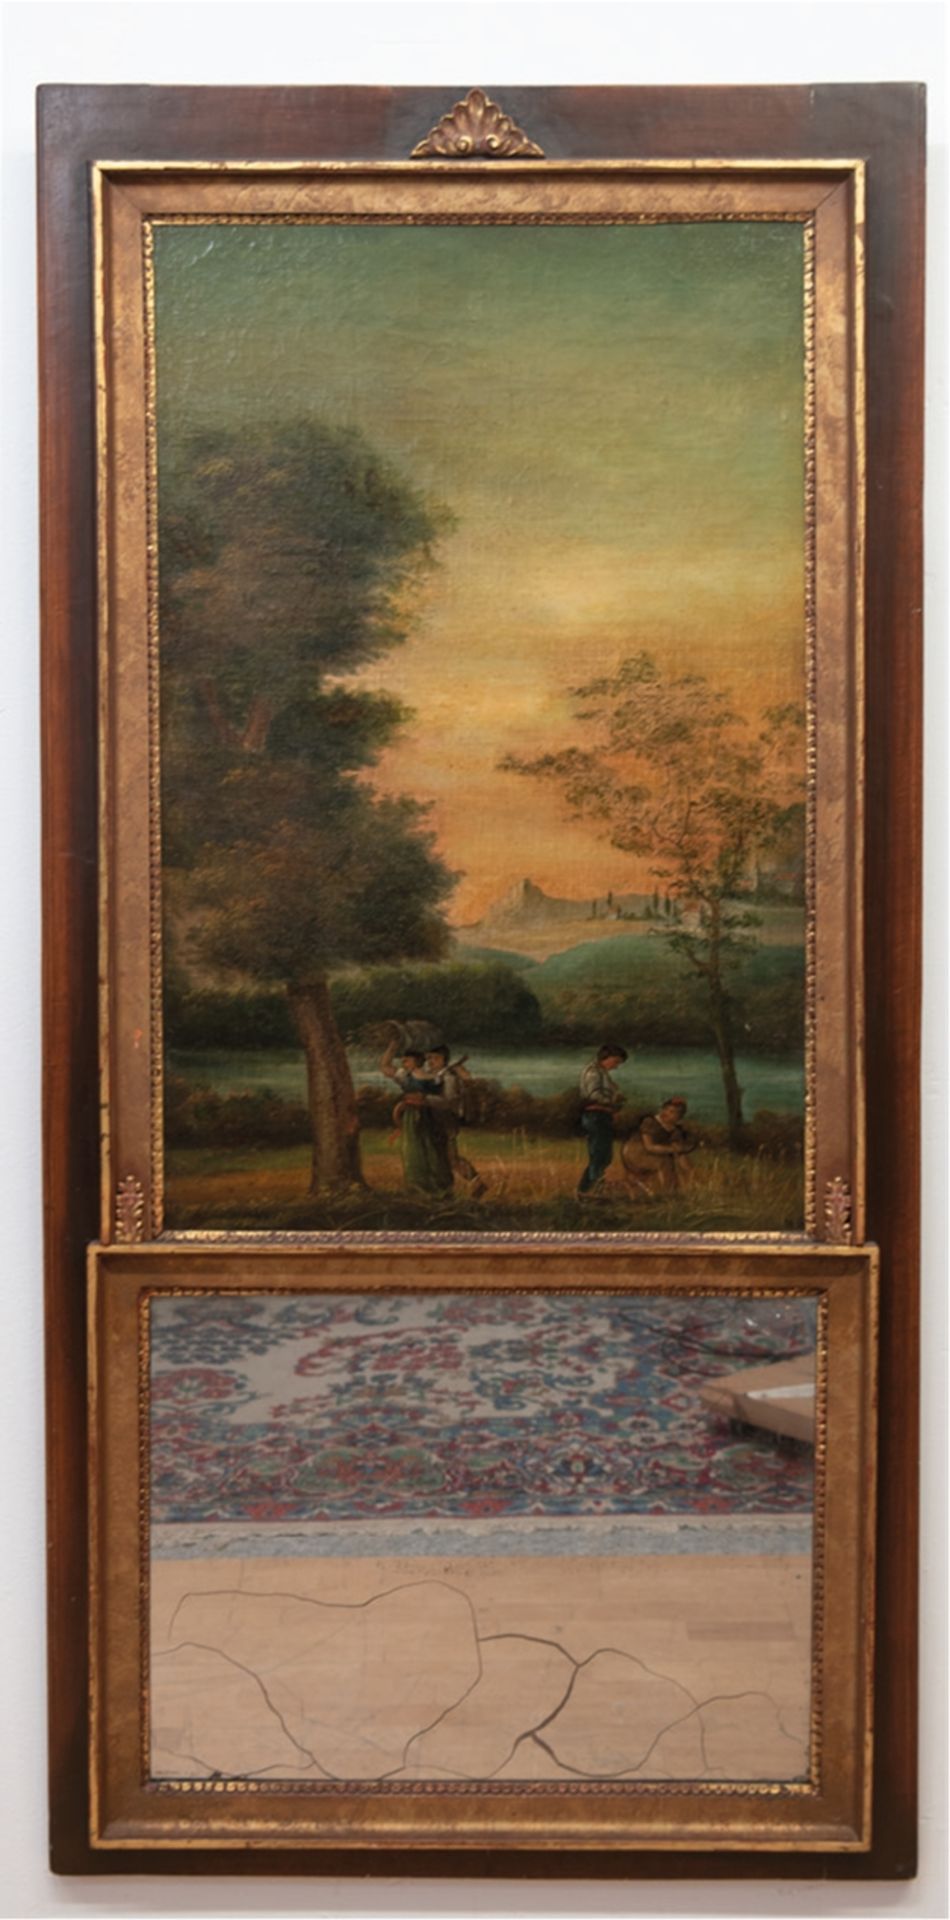 Spiegel mit Gemälde, 19. Jh., im oberen Bereich mit Darstellung von Personen in Flußlandschaft, mon